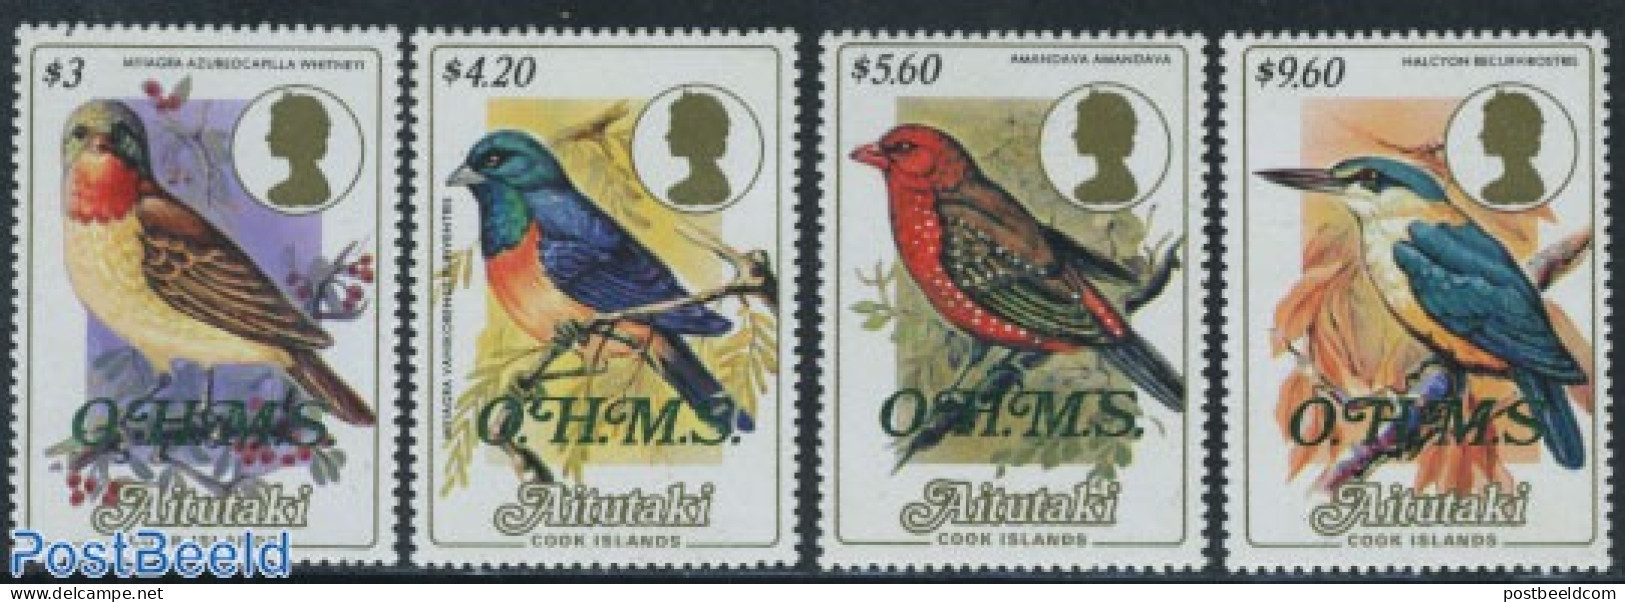 Aitutaki 1986 OHMS Overprints 4v, Mint NH, Nature - Birds - Kingfishers - Aitutaki